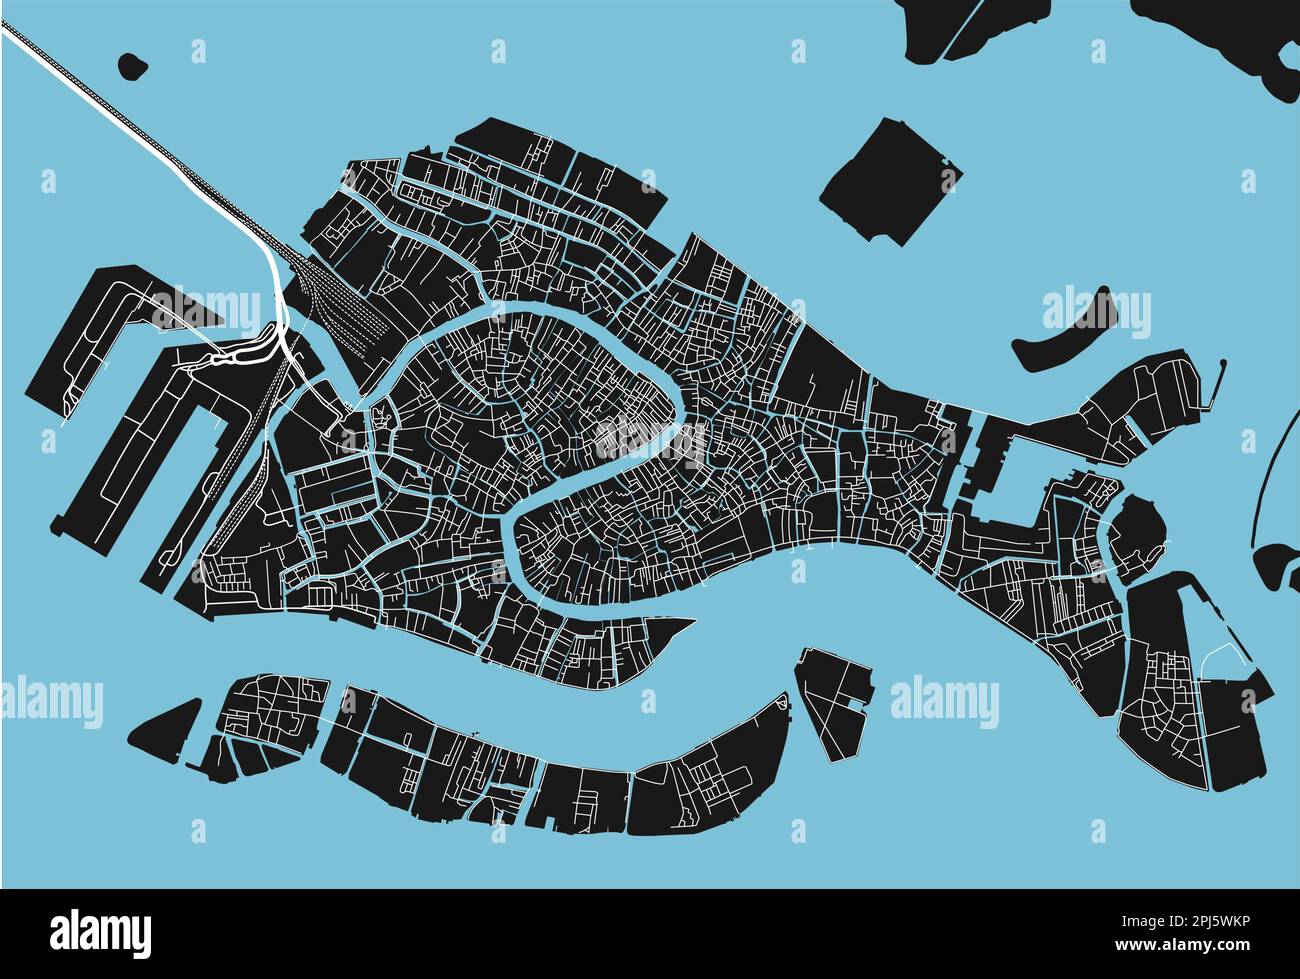 Mappa vettoriale di Venezia in bianco e nero con strati separati ben organizzati. Illustrazione Vettoriale